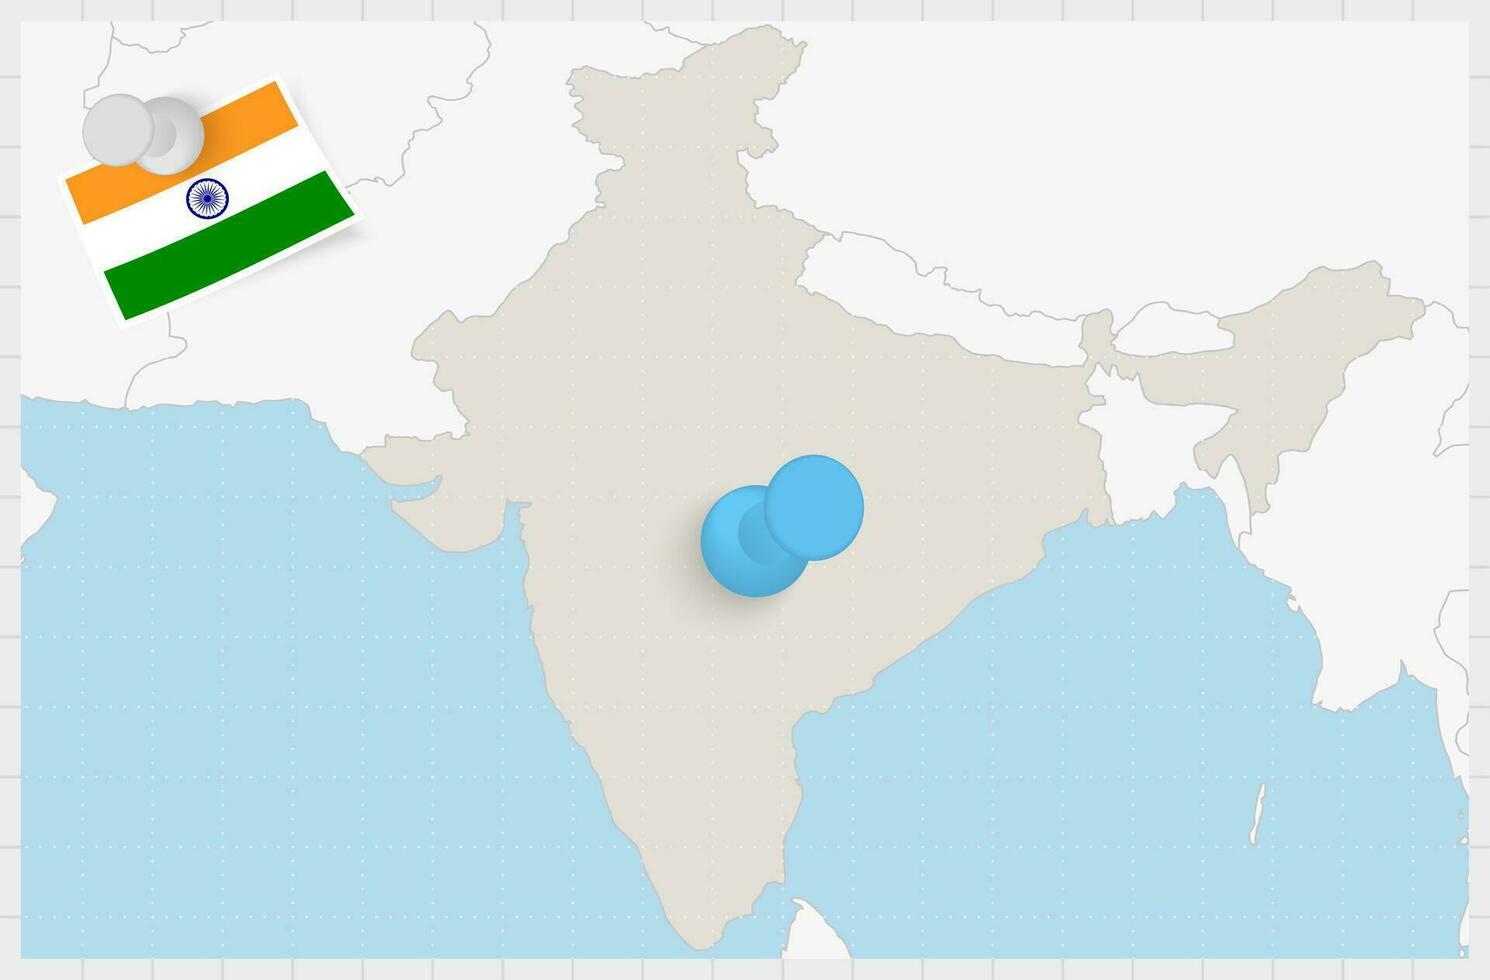 Karte von Indien mit ein festgesteckt Blau Stift. festgesteckt Flagge von Indien. vektor